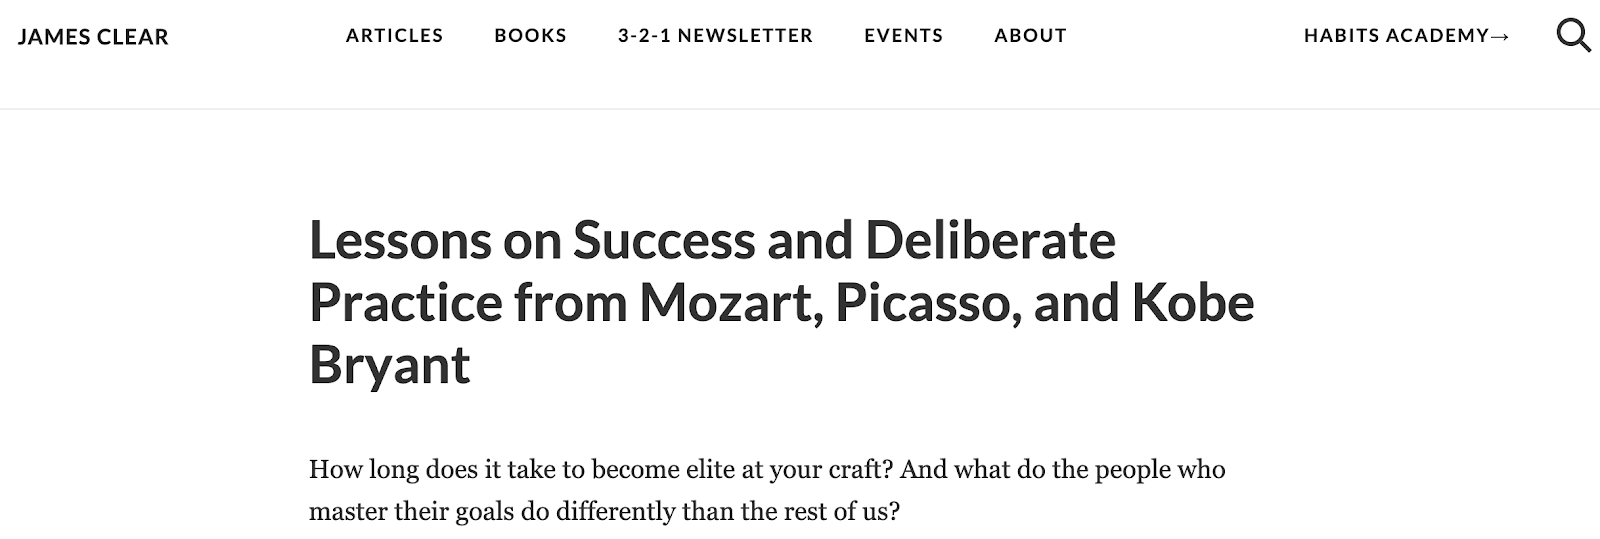 Leçons sur le succès et la pratique délibérée de Mozart Picasso et Kobe Bryant